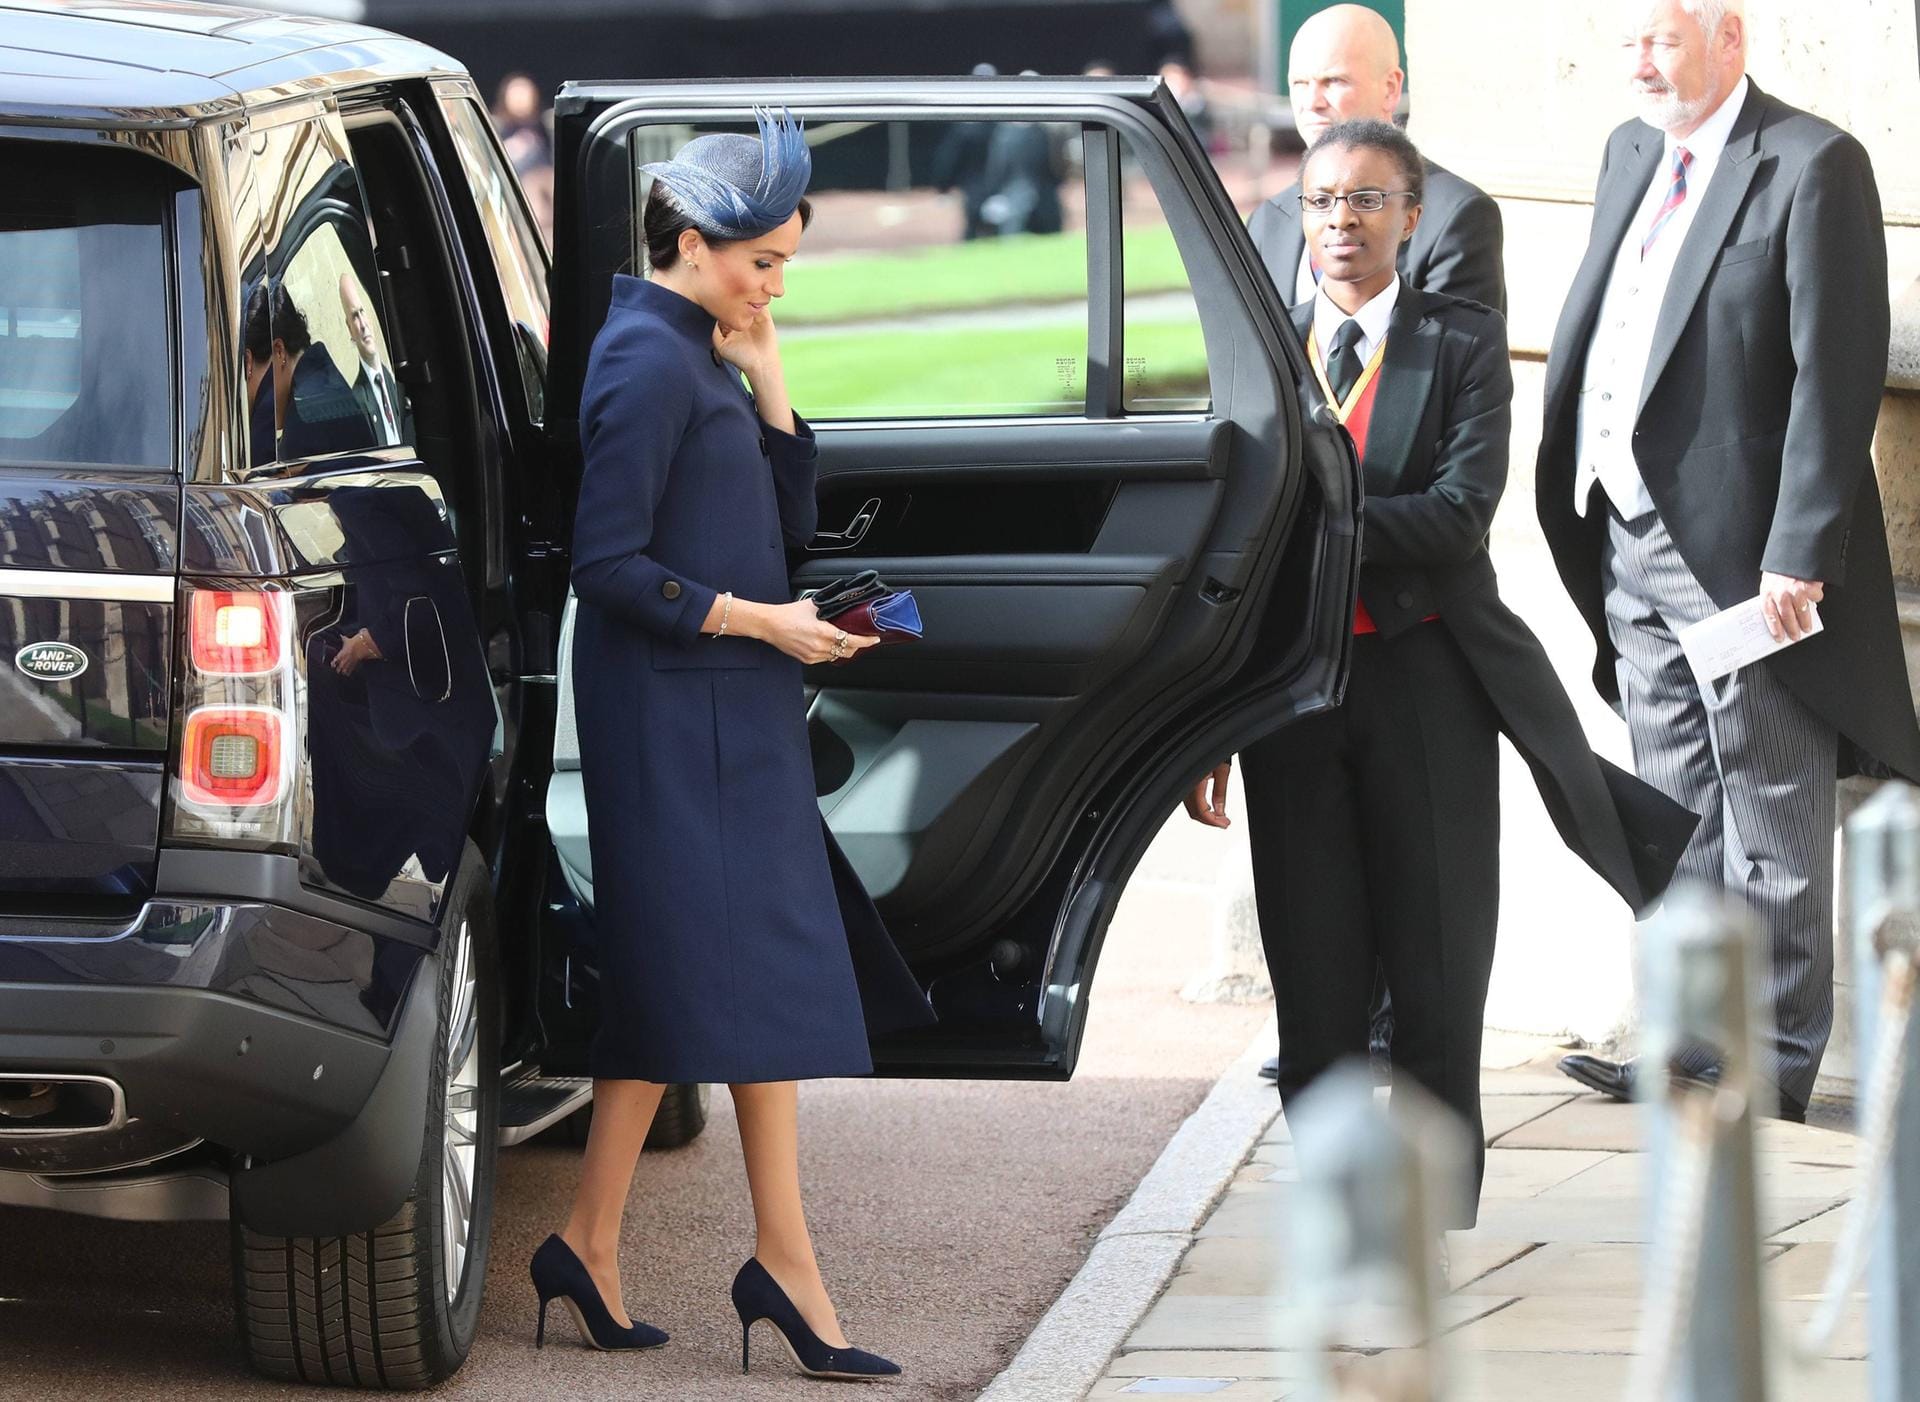 12. Oktober 2018: Zur Hochzeit von Prinzessin Eugenie erschien Herzogin Meghan in einem blauen Mantel, der erneut für Spekulationen sorgte.